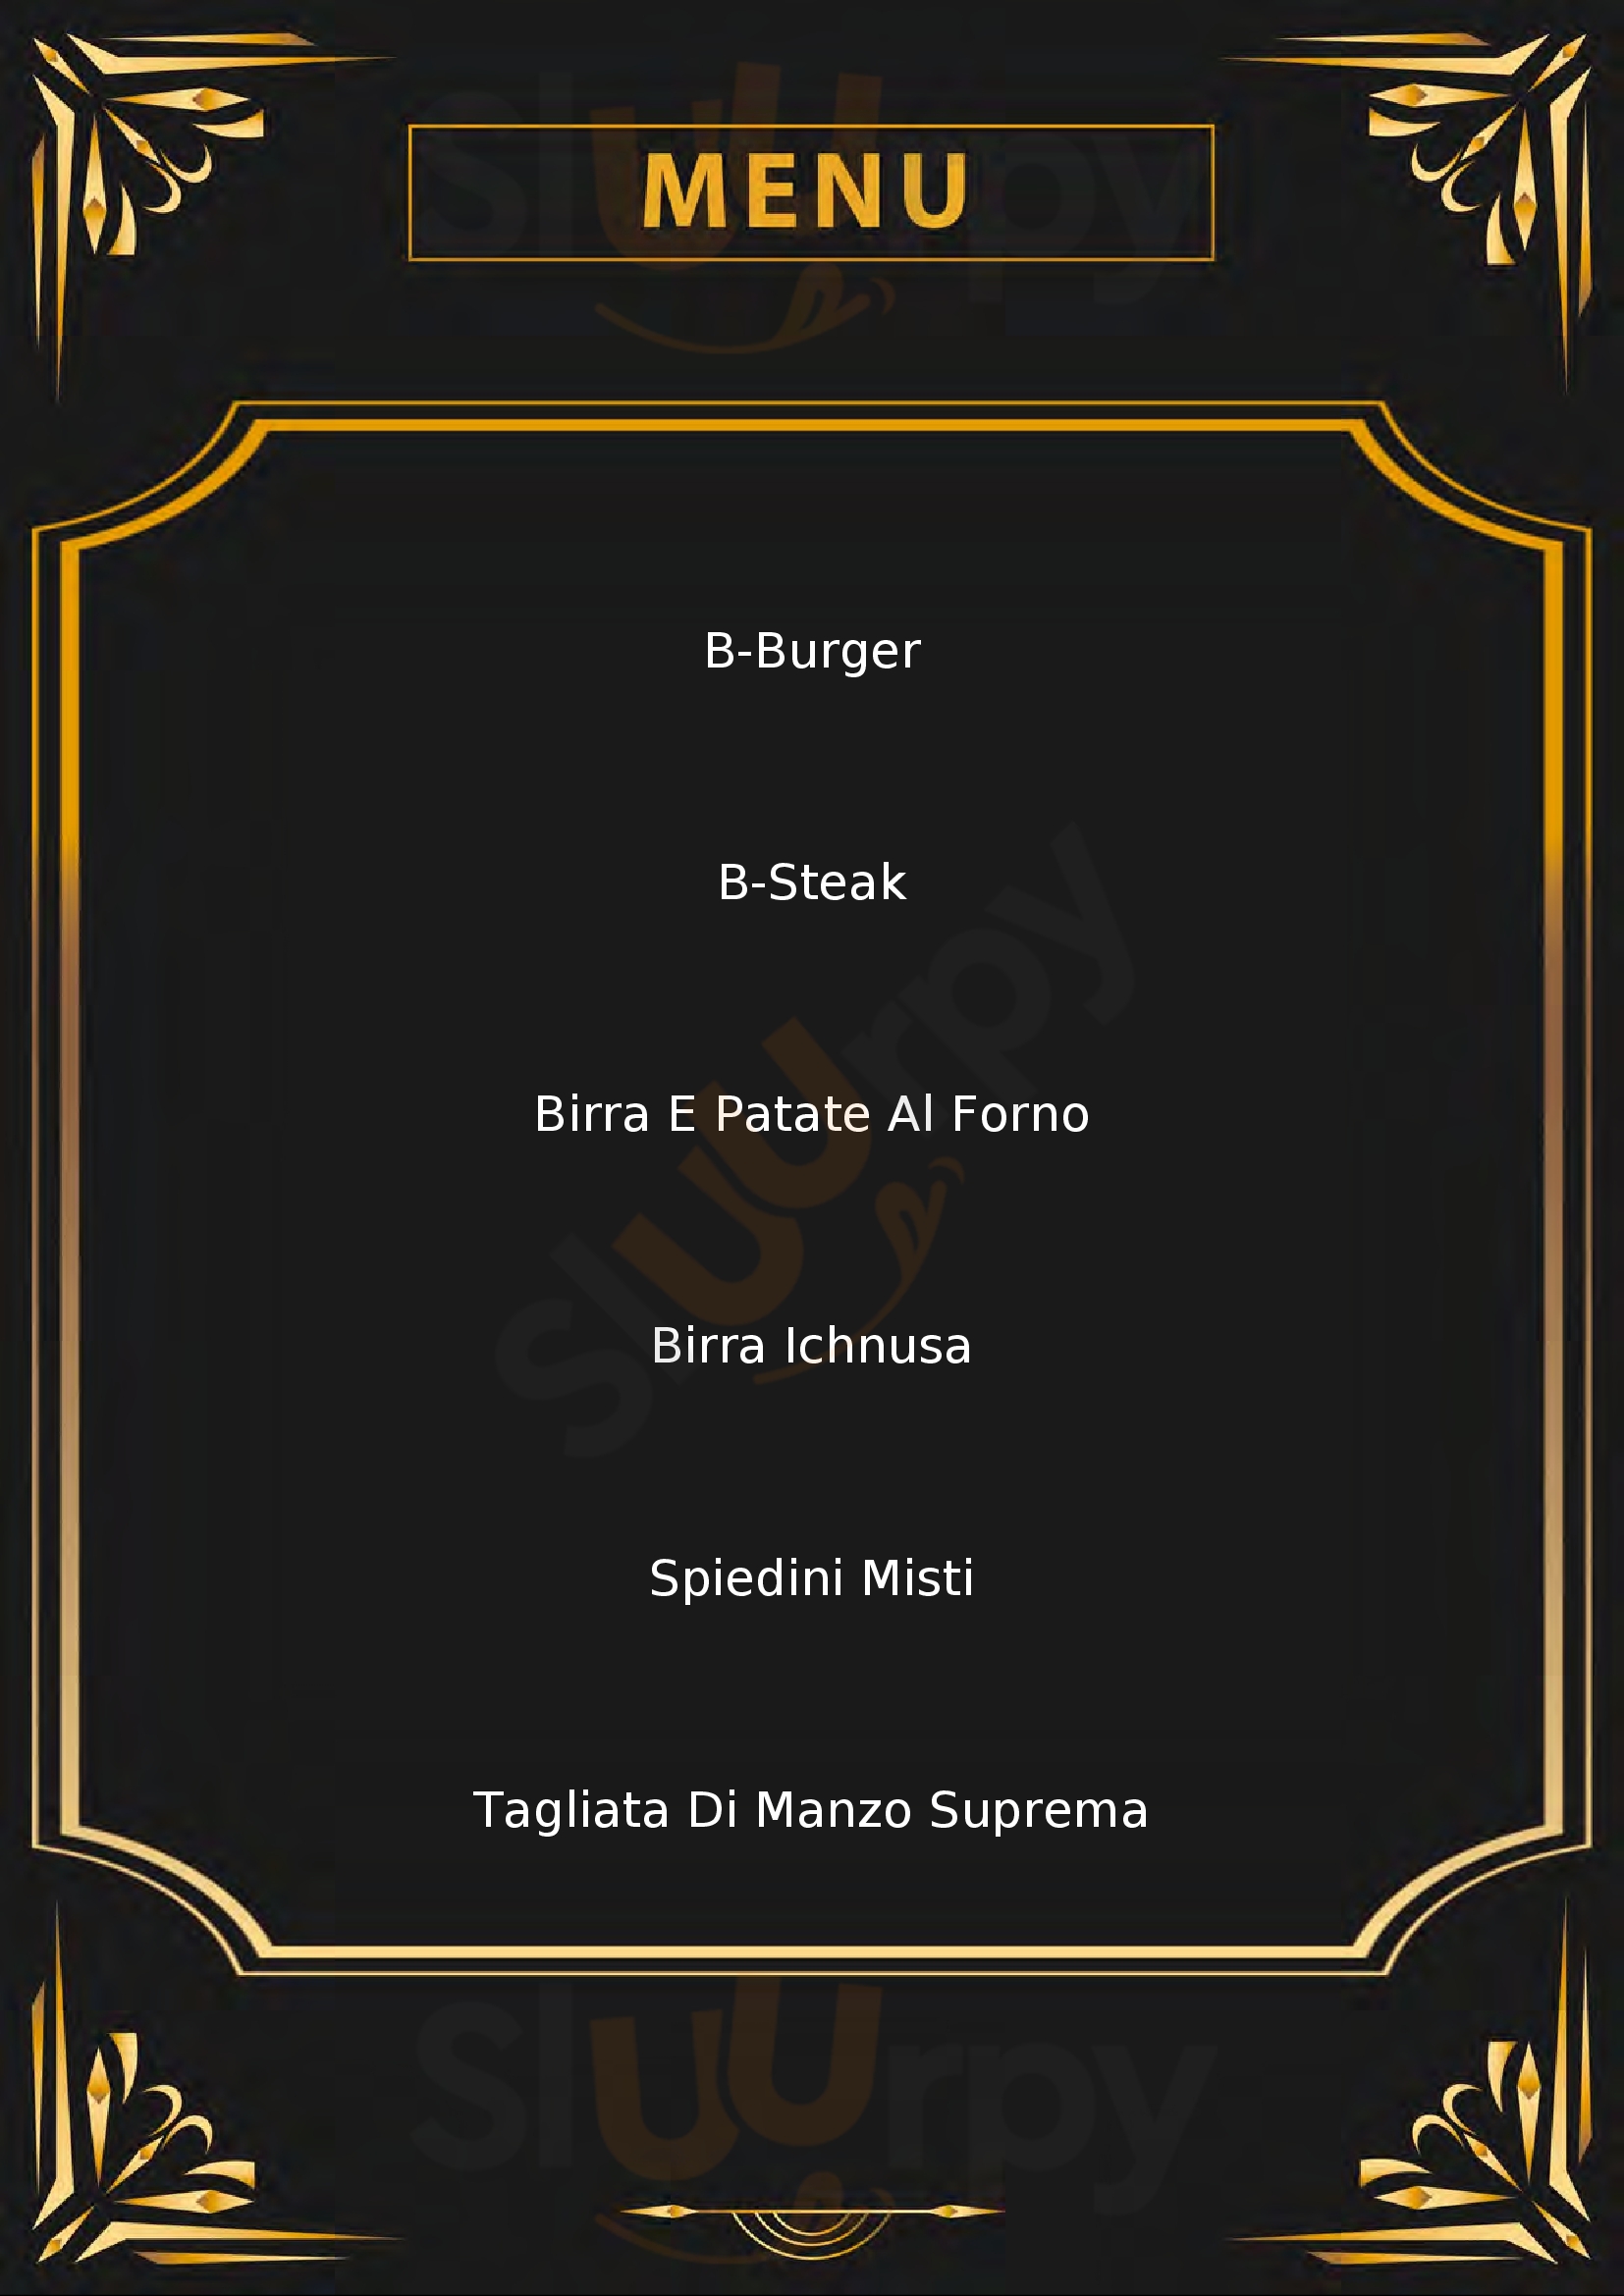 B-Steak x Birraria Ichnusa Cagliari menù 1 pagina